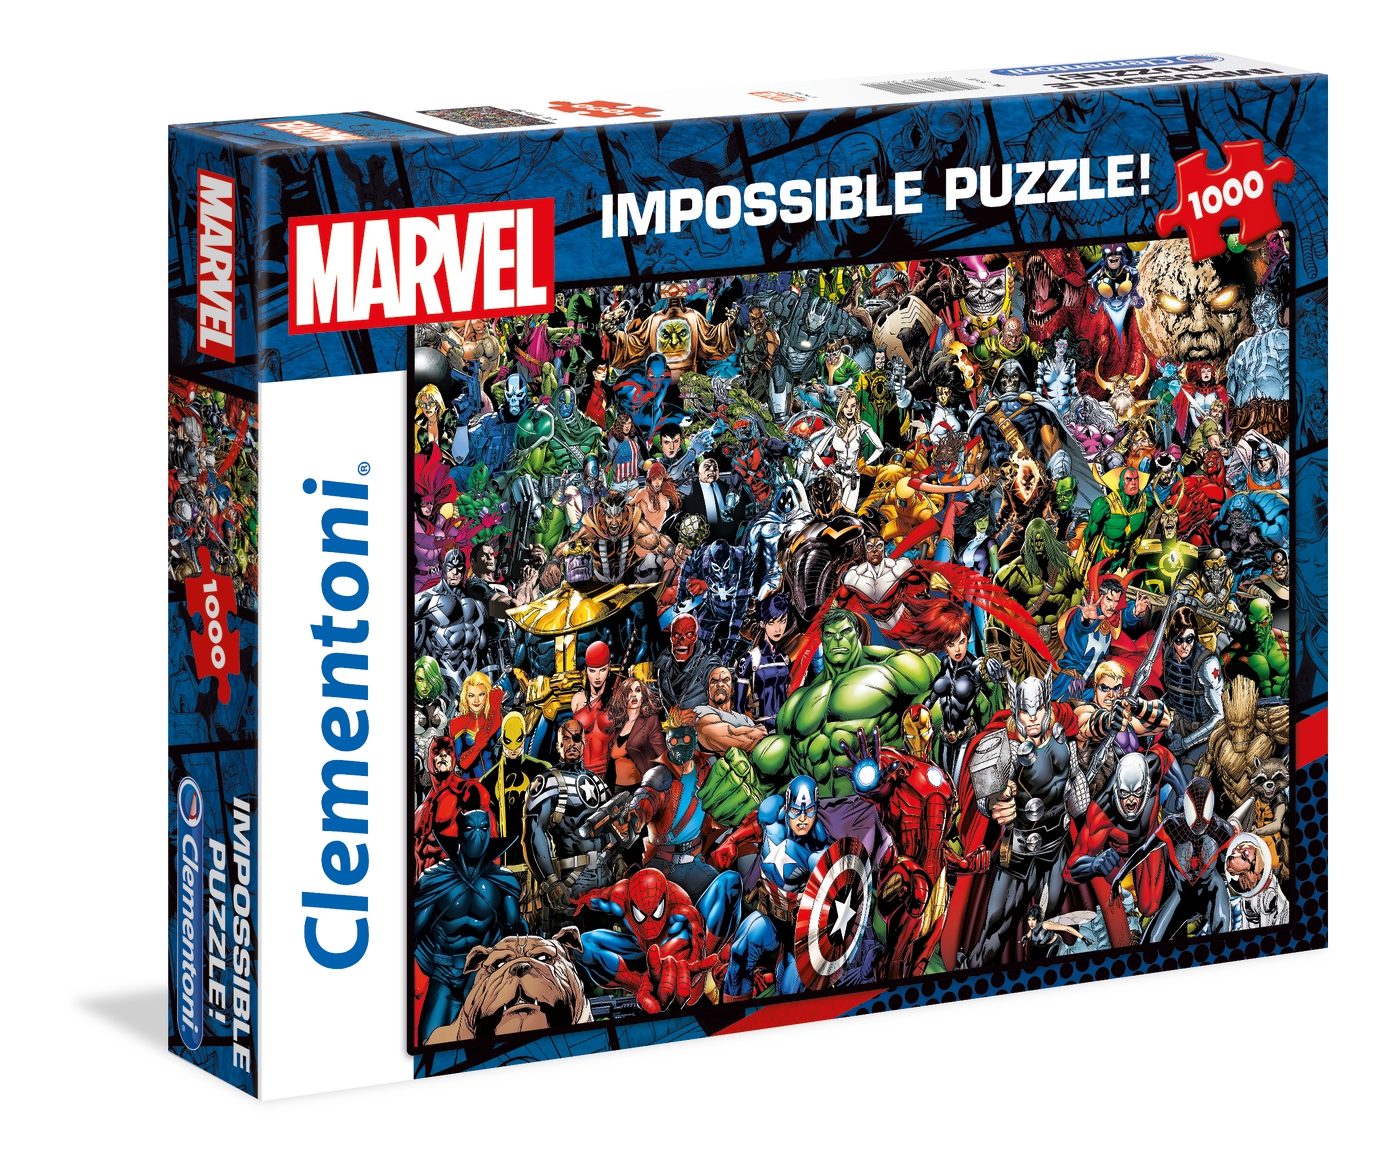 Clementoni 39369 Trolls 1000 Pieces Impossible Puzzle for sale online 